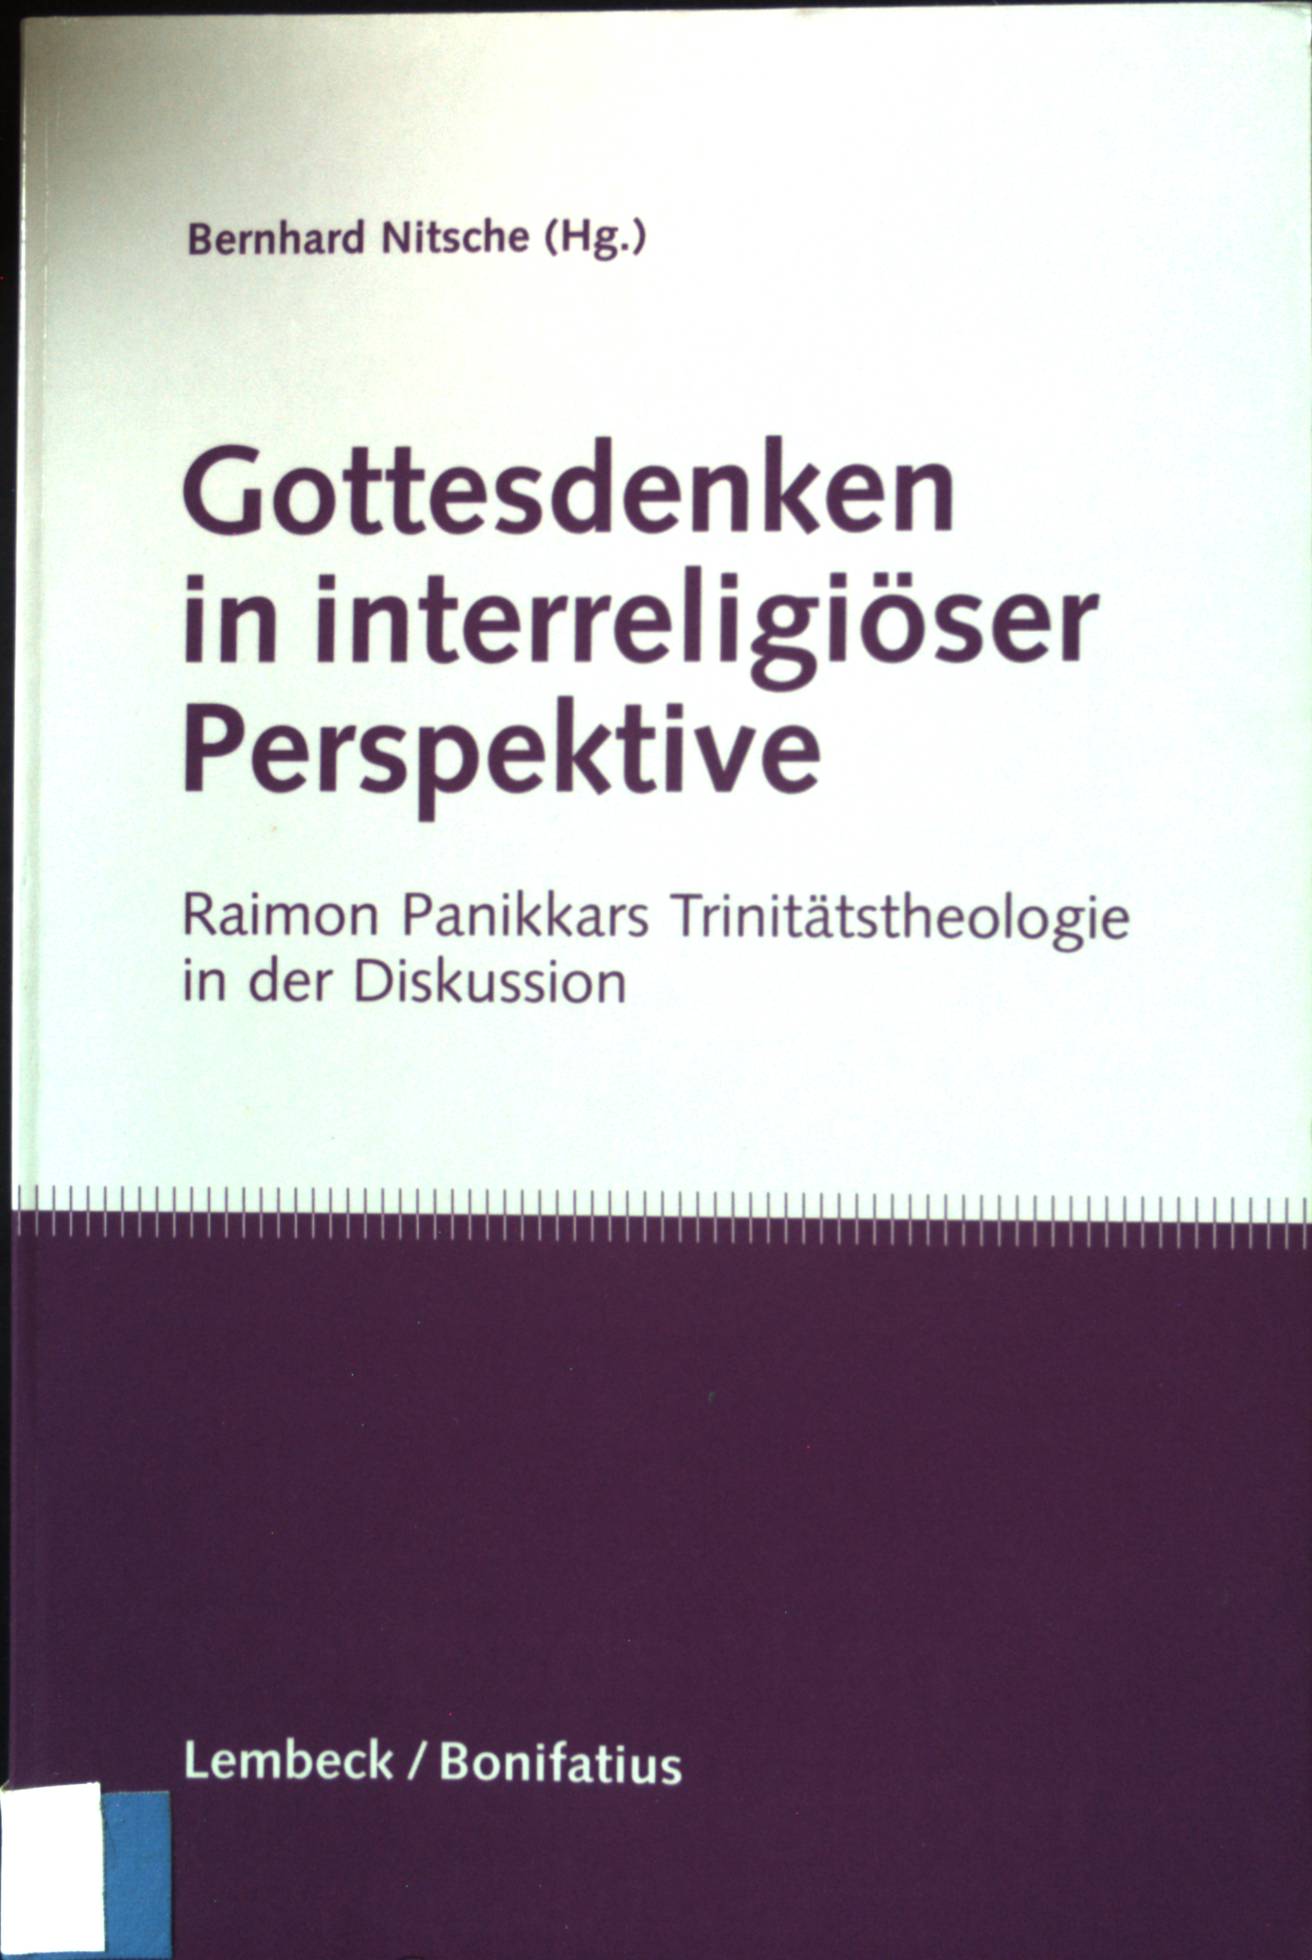 Gottesdenken in interreligiöser Perspektive : Raimon Panikkars Trinitätstheologie in der Diskussion. - Nitsche, Bernhard